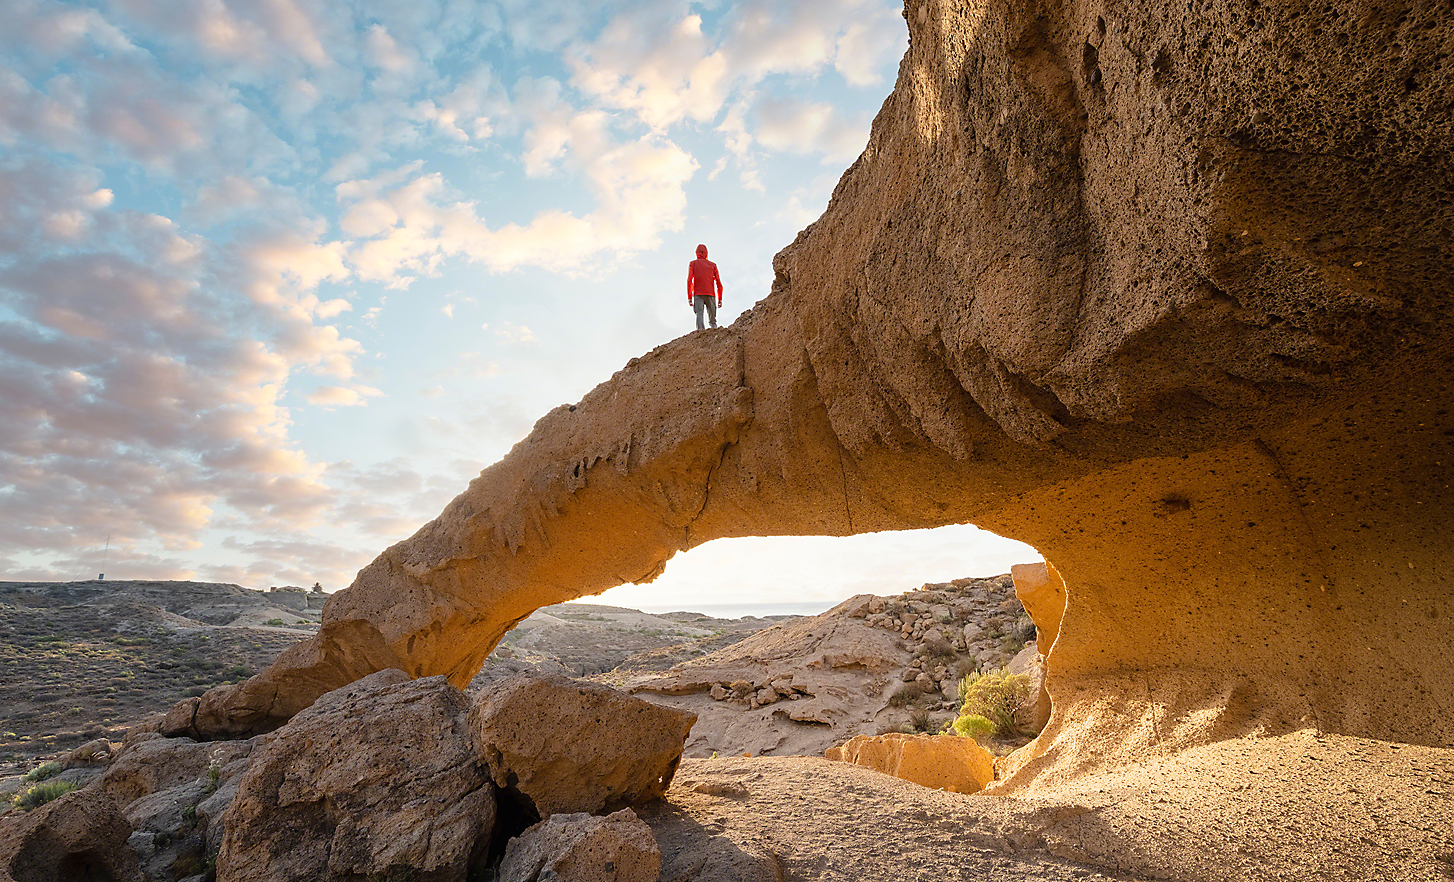 Ultraweitwinkel-Aufnahme eines Mannes, der auf einer Felsformation steht und über eine Wüstenlandschaft blickt